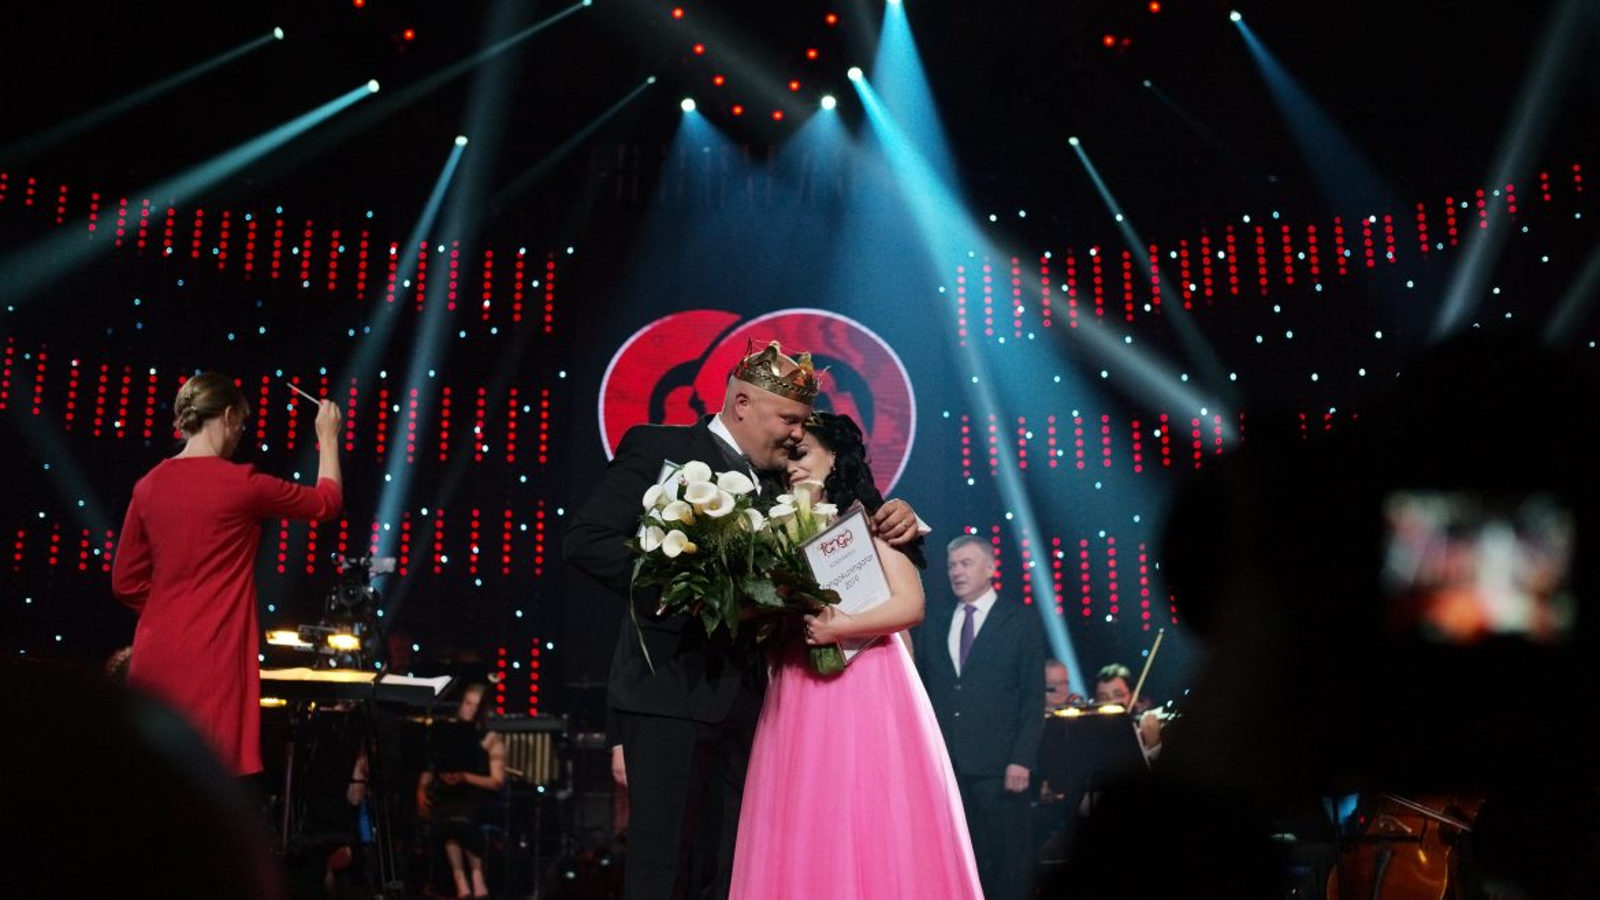 Kuvassa ovat tangokuninkaalliset 2019, vasemmalla Johannes Vatjus tummassa puvussa ja oikealla Pirita Niemenmaa vaaleanpunaisessa puvussa.  He halaavat toisiaan lavalla ja takana on punamusta tausta sekä sinisiä  valojuovia.  Vasemmalla on selin punaisessa mekossa oleva orkesterinjohtaja.